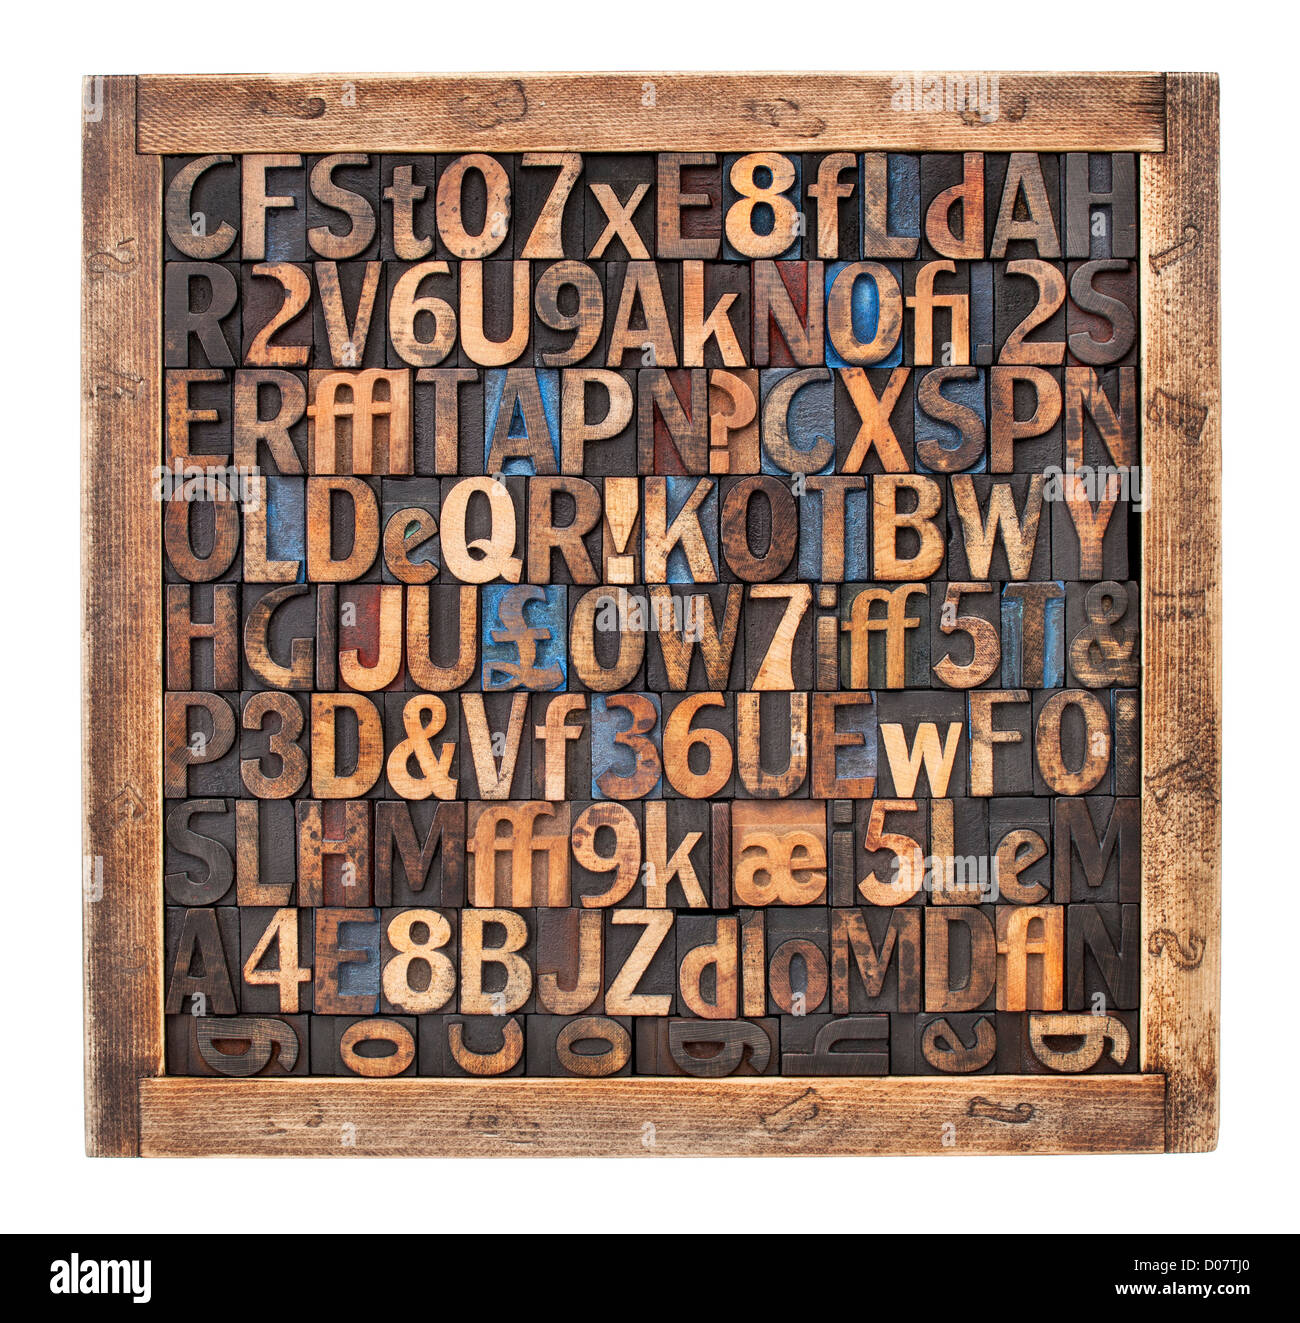 Buchstaben, Ziffern, Satzzeichen in Vintage Buchdruck Holzart Blöcke nach dem Zufallsprinzip in einer Holzkiste gelegt Stockfoto